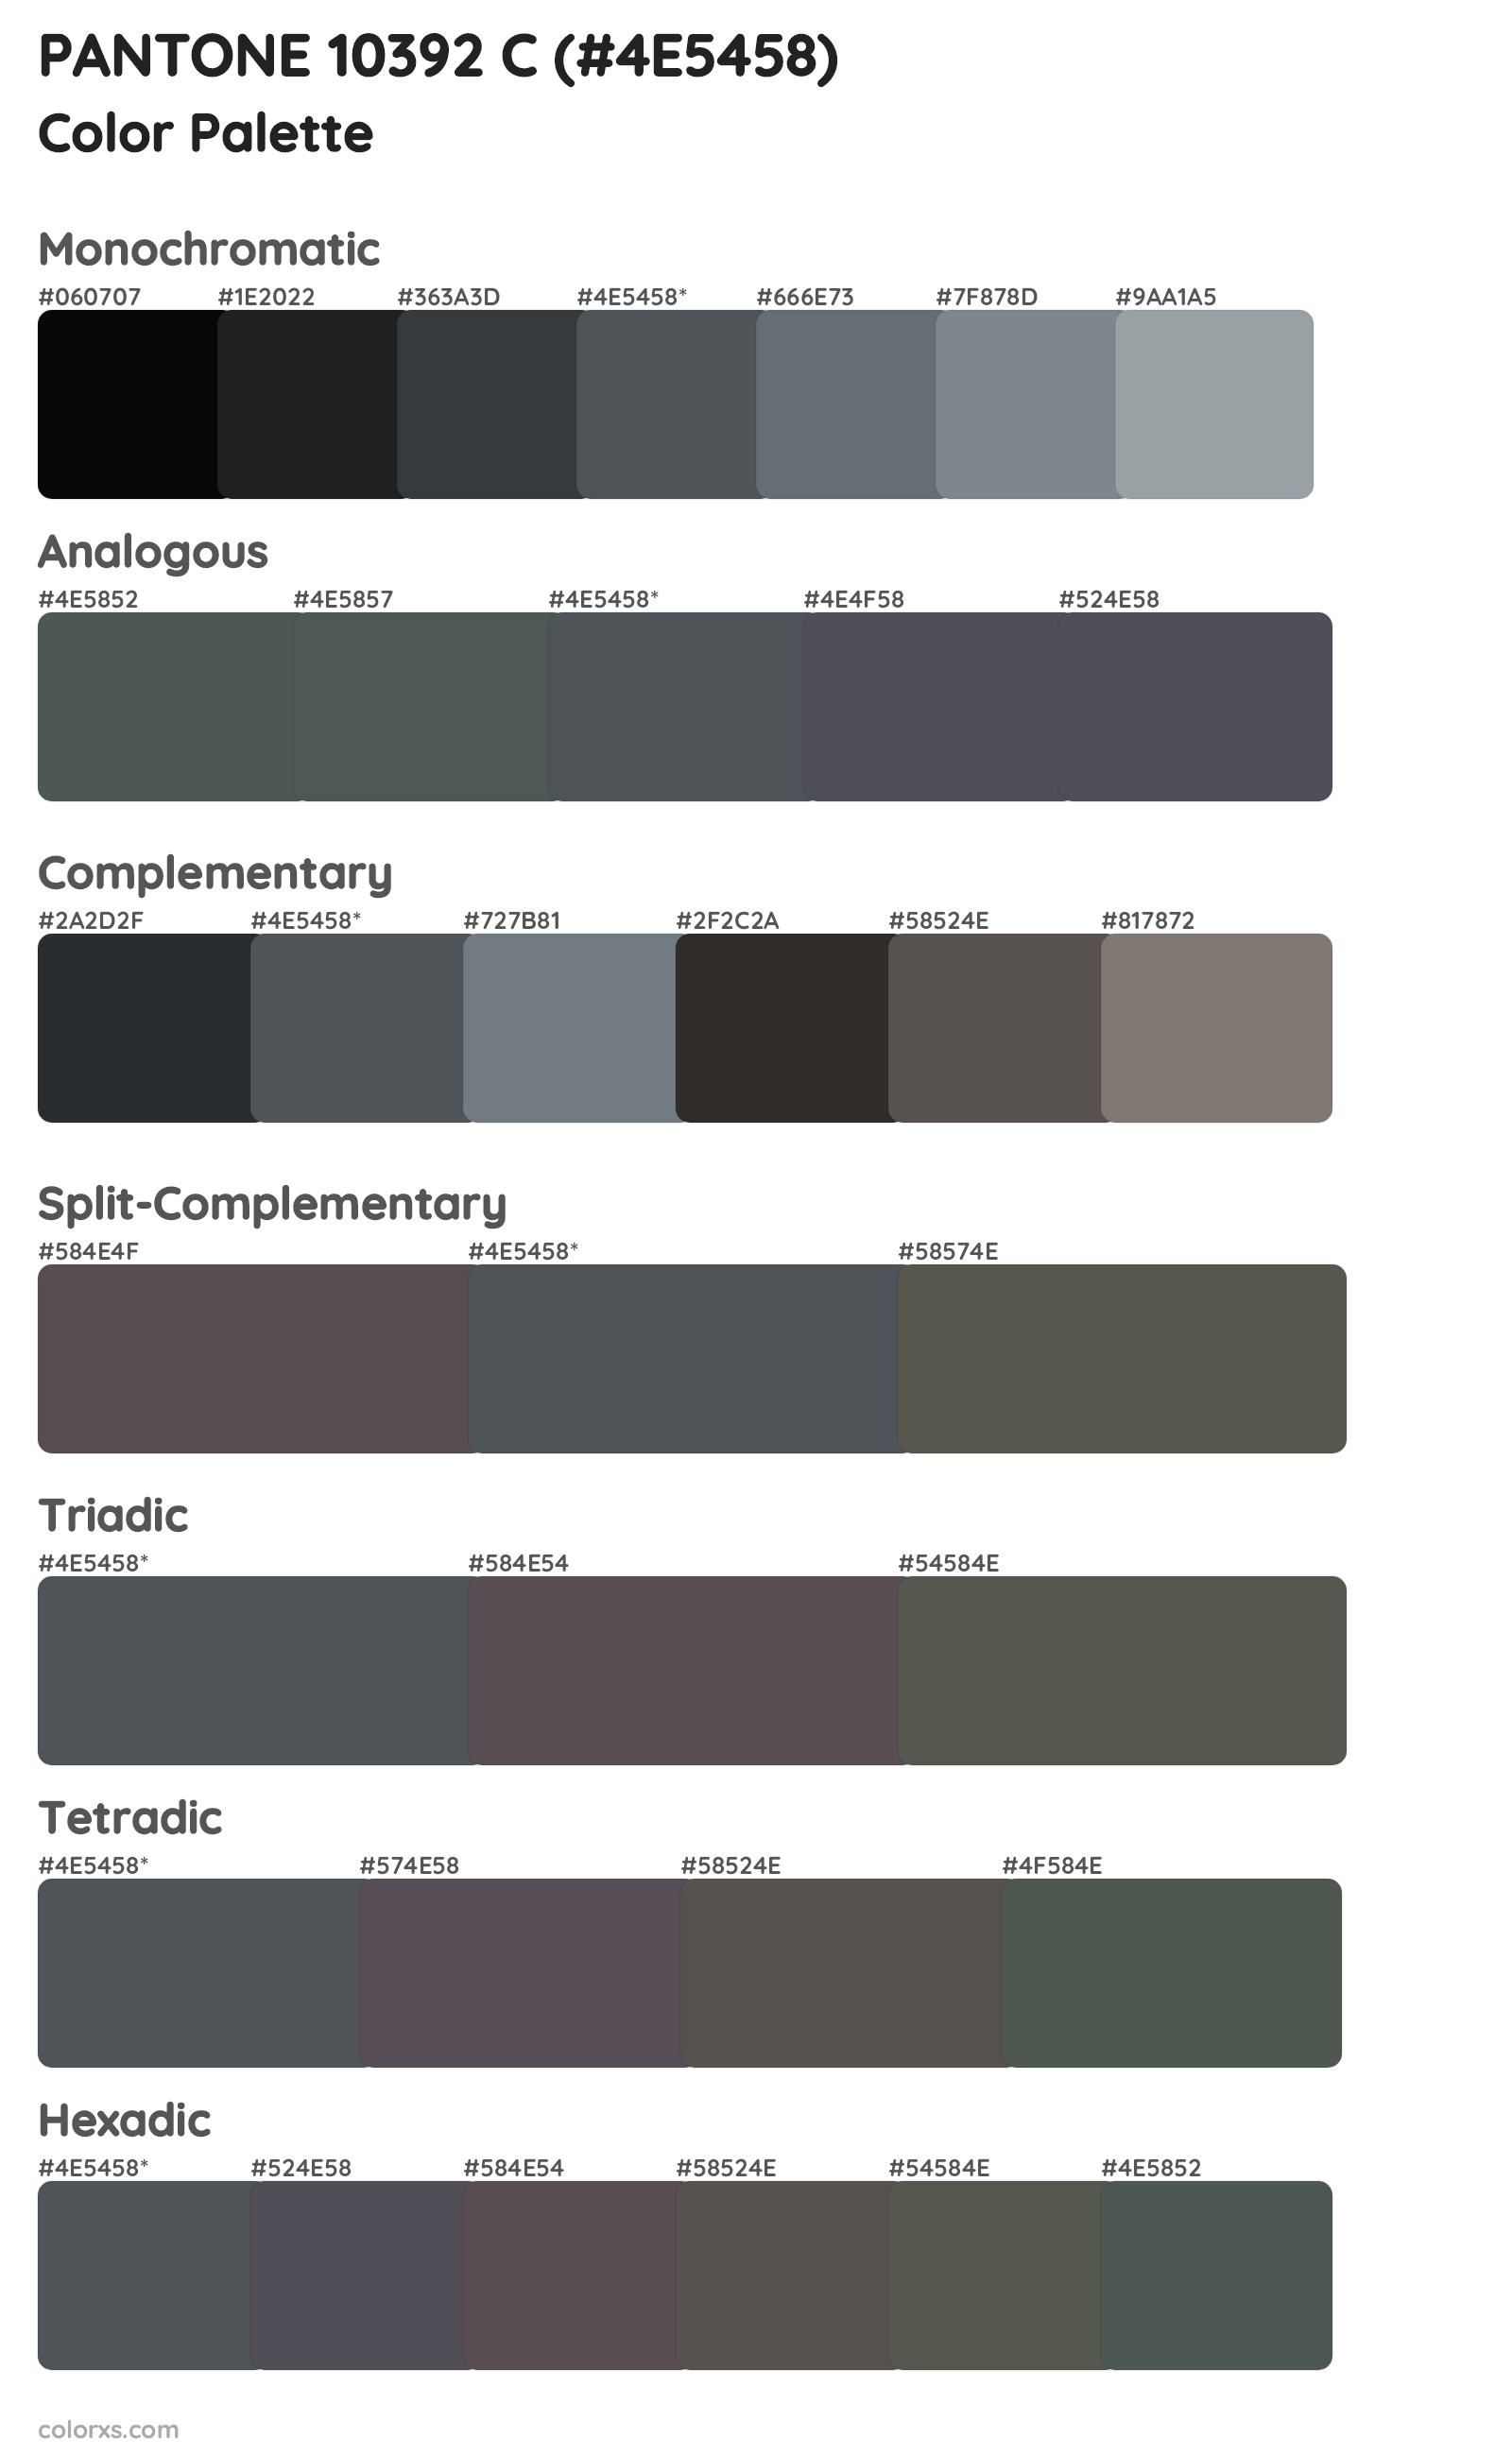 PANTONE 10392 C Color Scheme Palettes